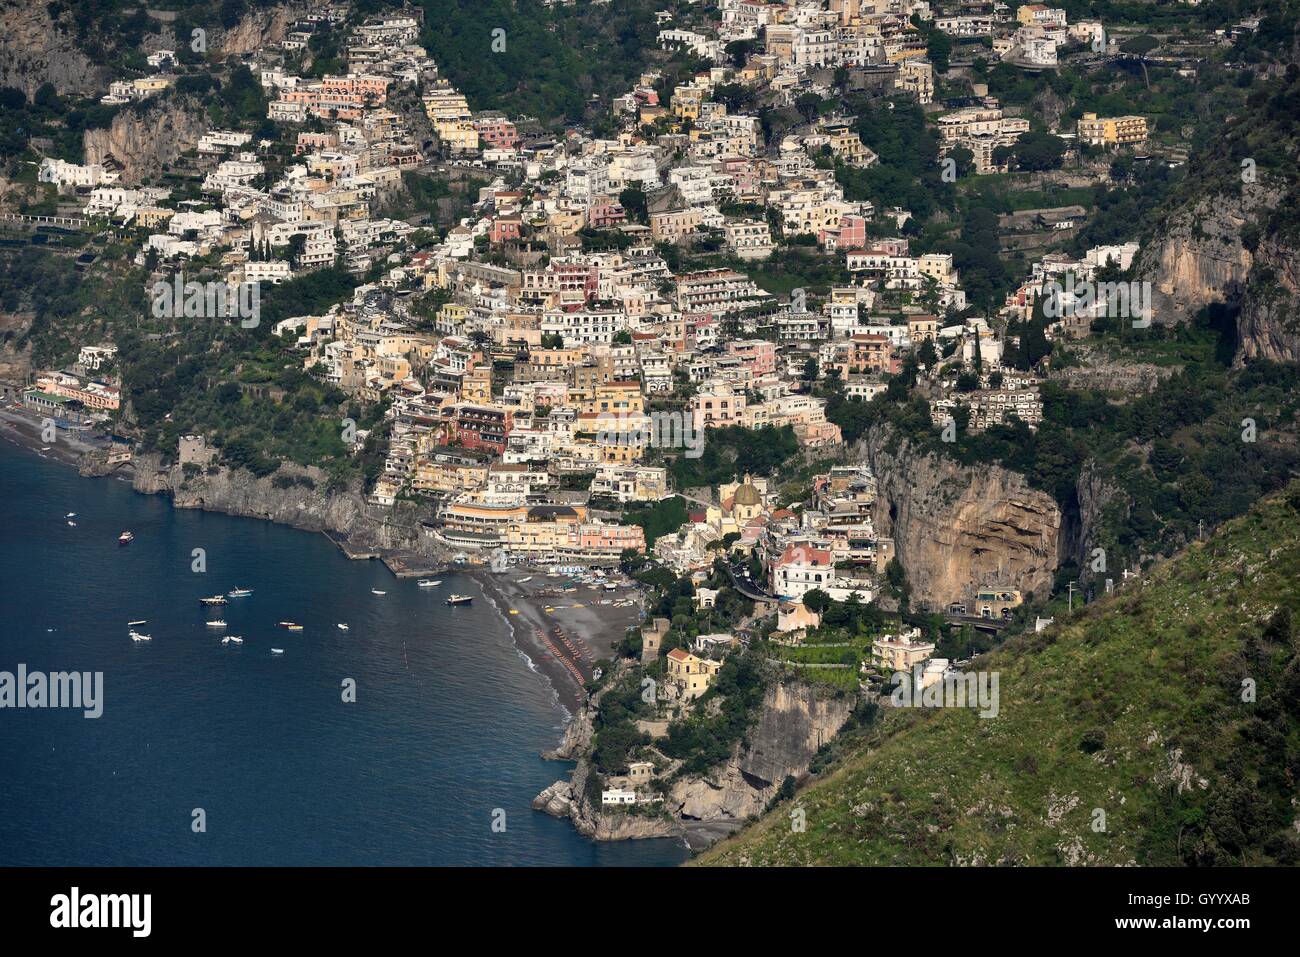 Vista del pueblo de Positano, Amalfi, Costiera Amalfitana, provincia de Salerno, Región de Campania, Italia Foto de stock